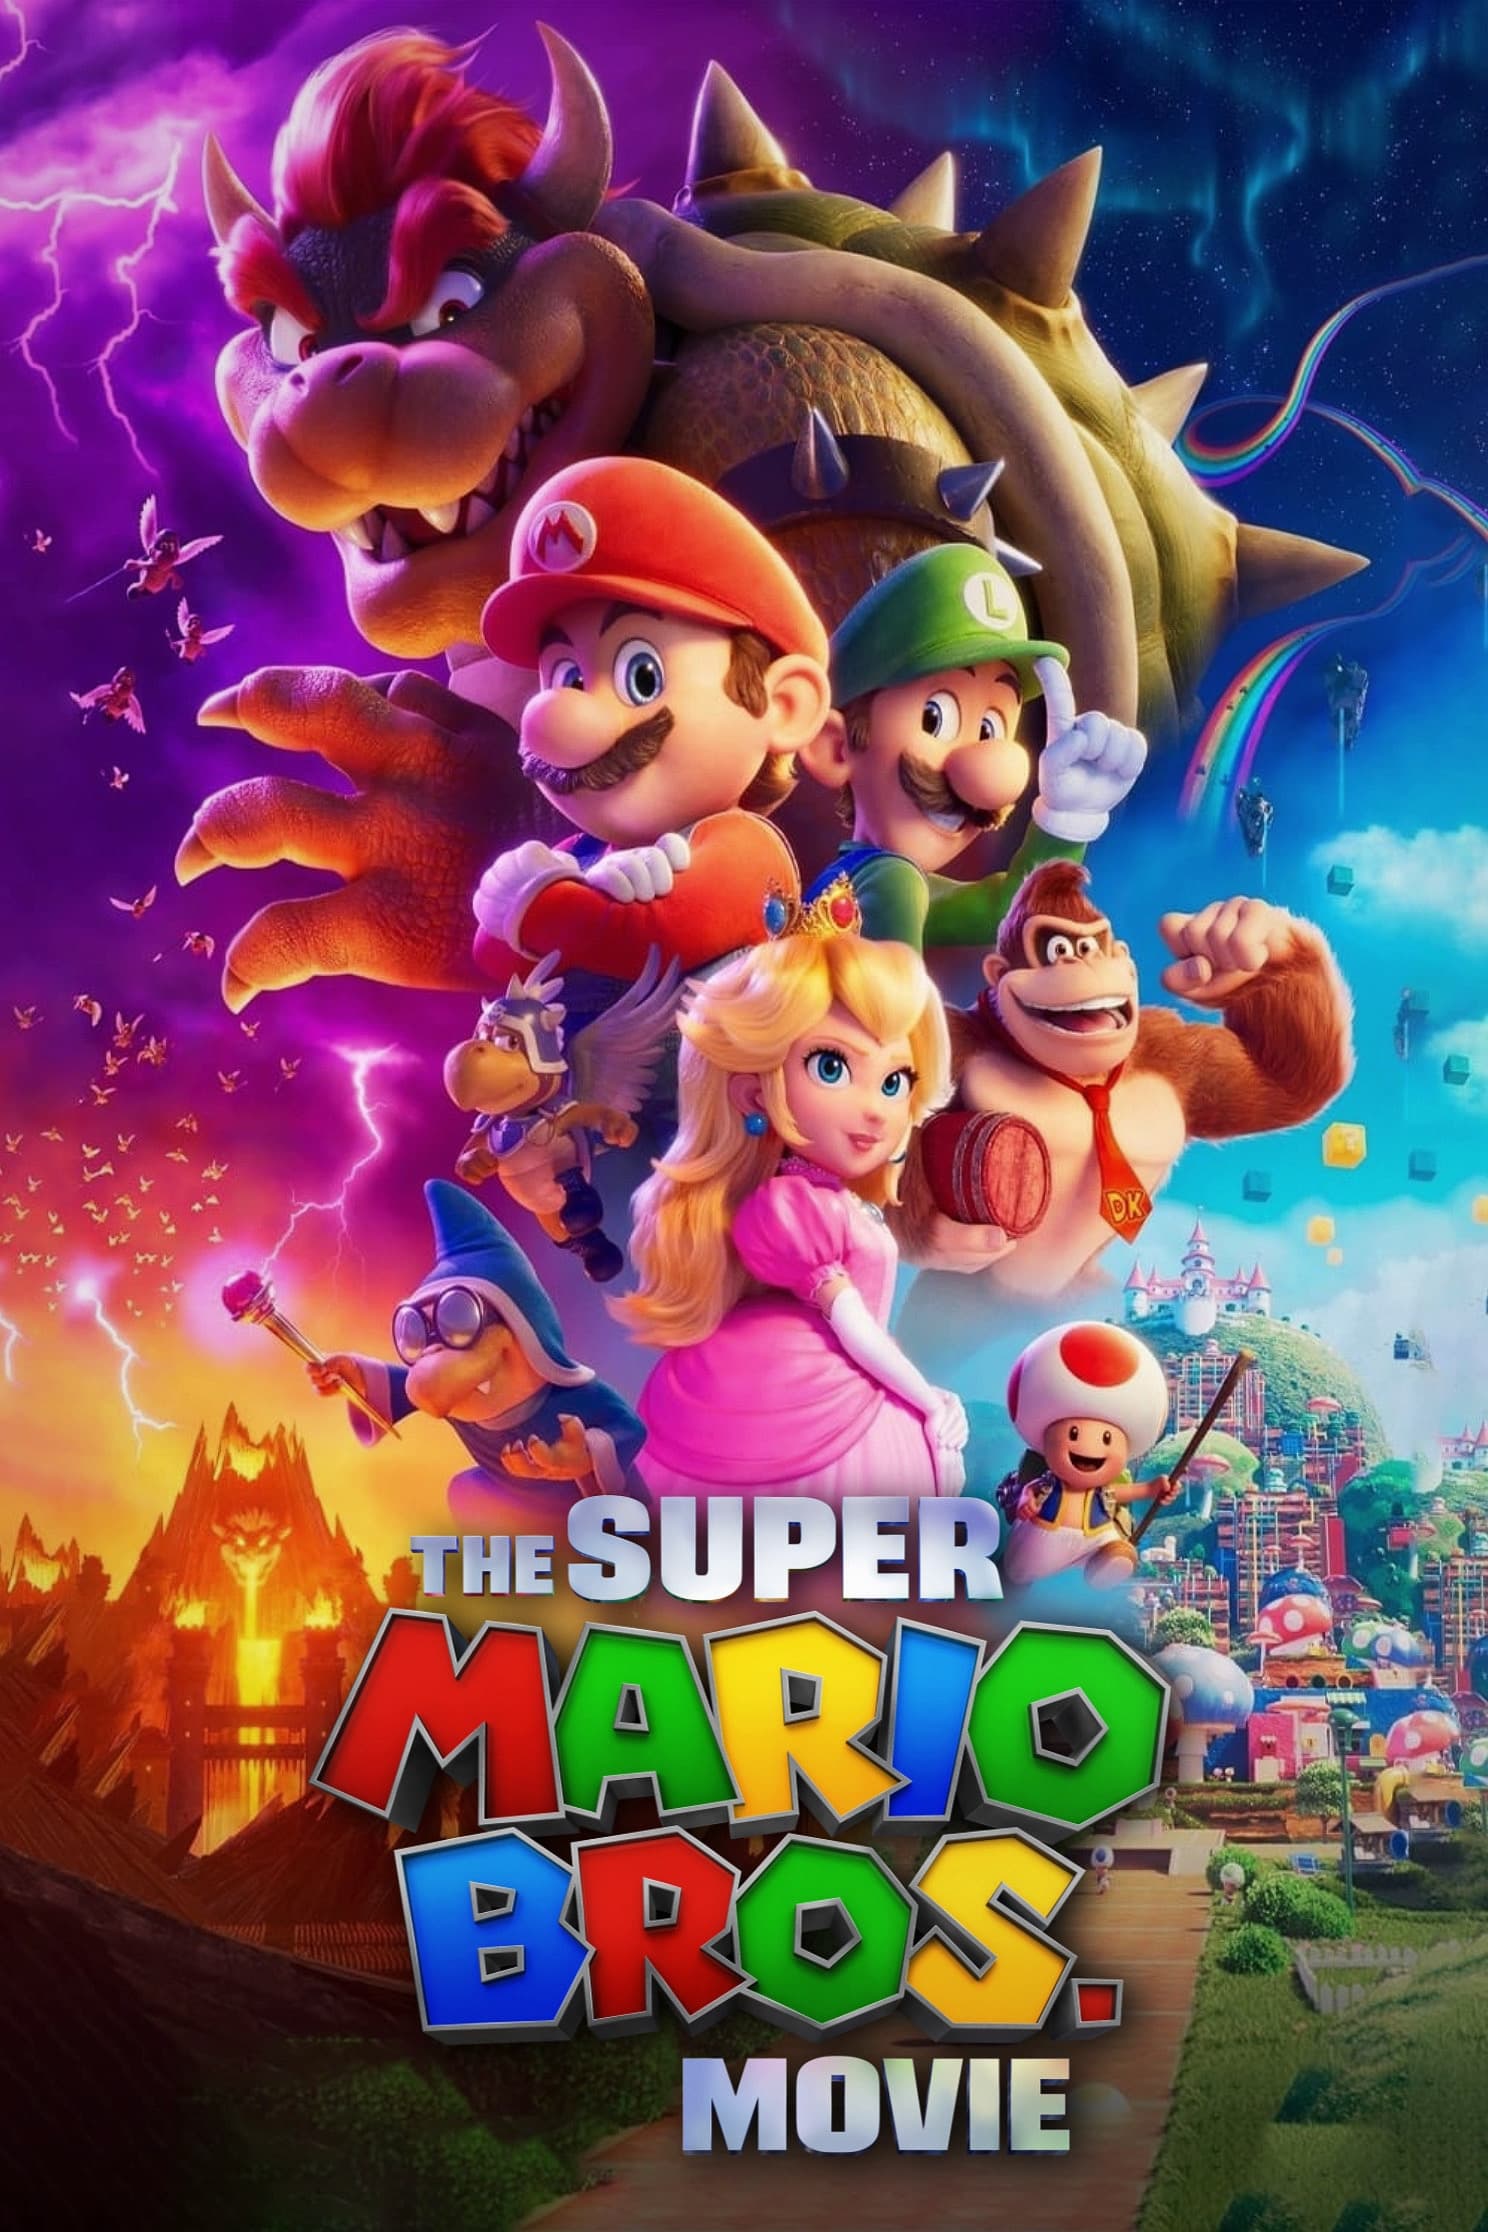 Super Mario Bros. La película